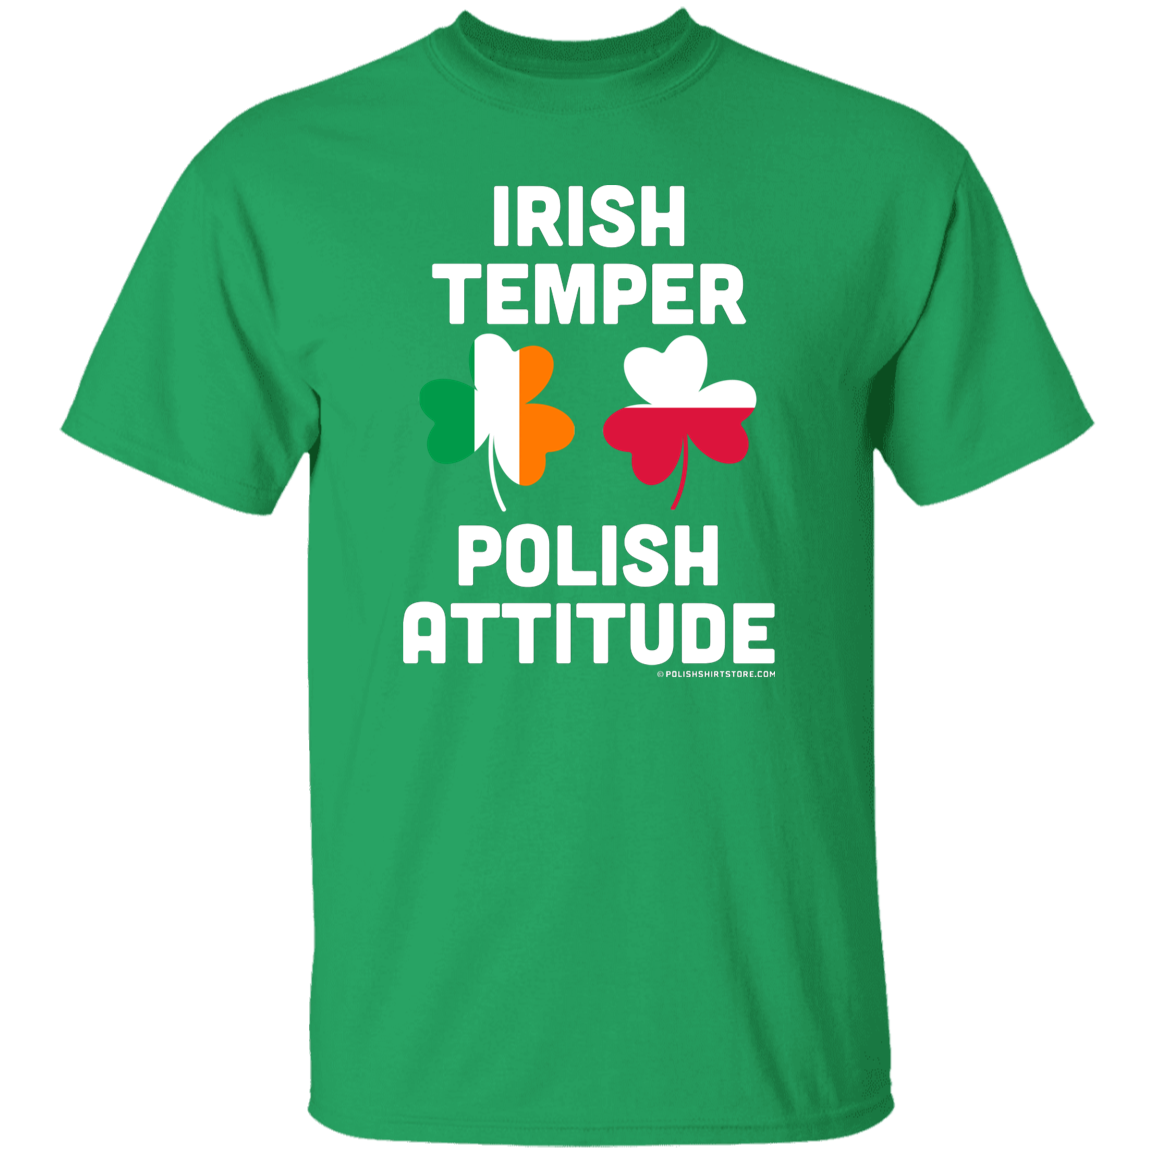 Irish Temper Polish Attitude Apparel CustomCat G500 5.3 oz. T-Shirt Irish Green S